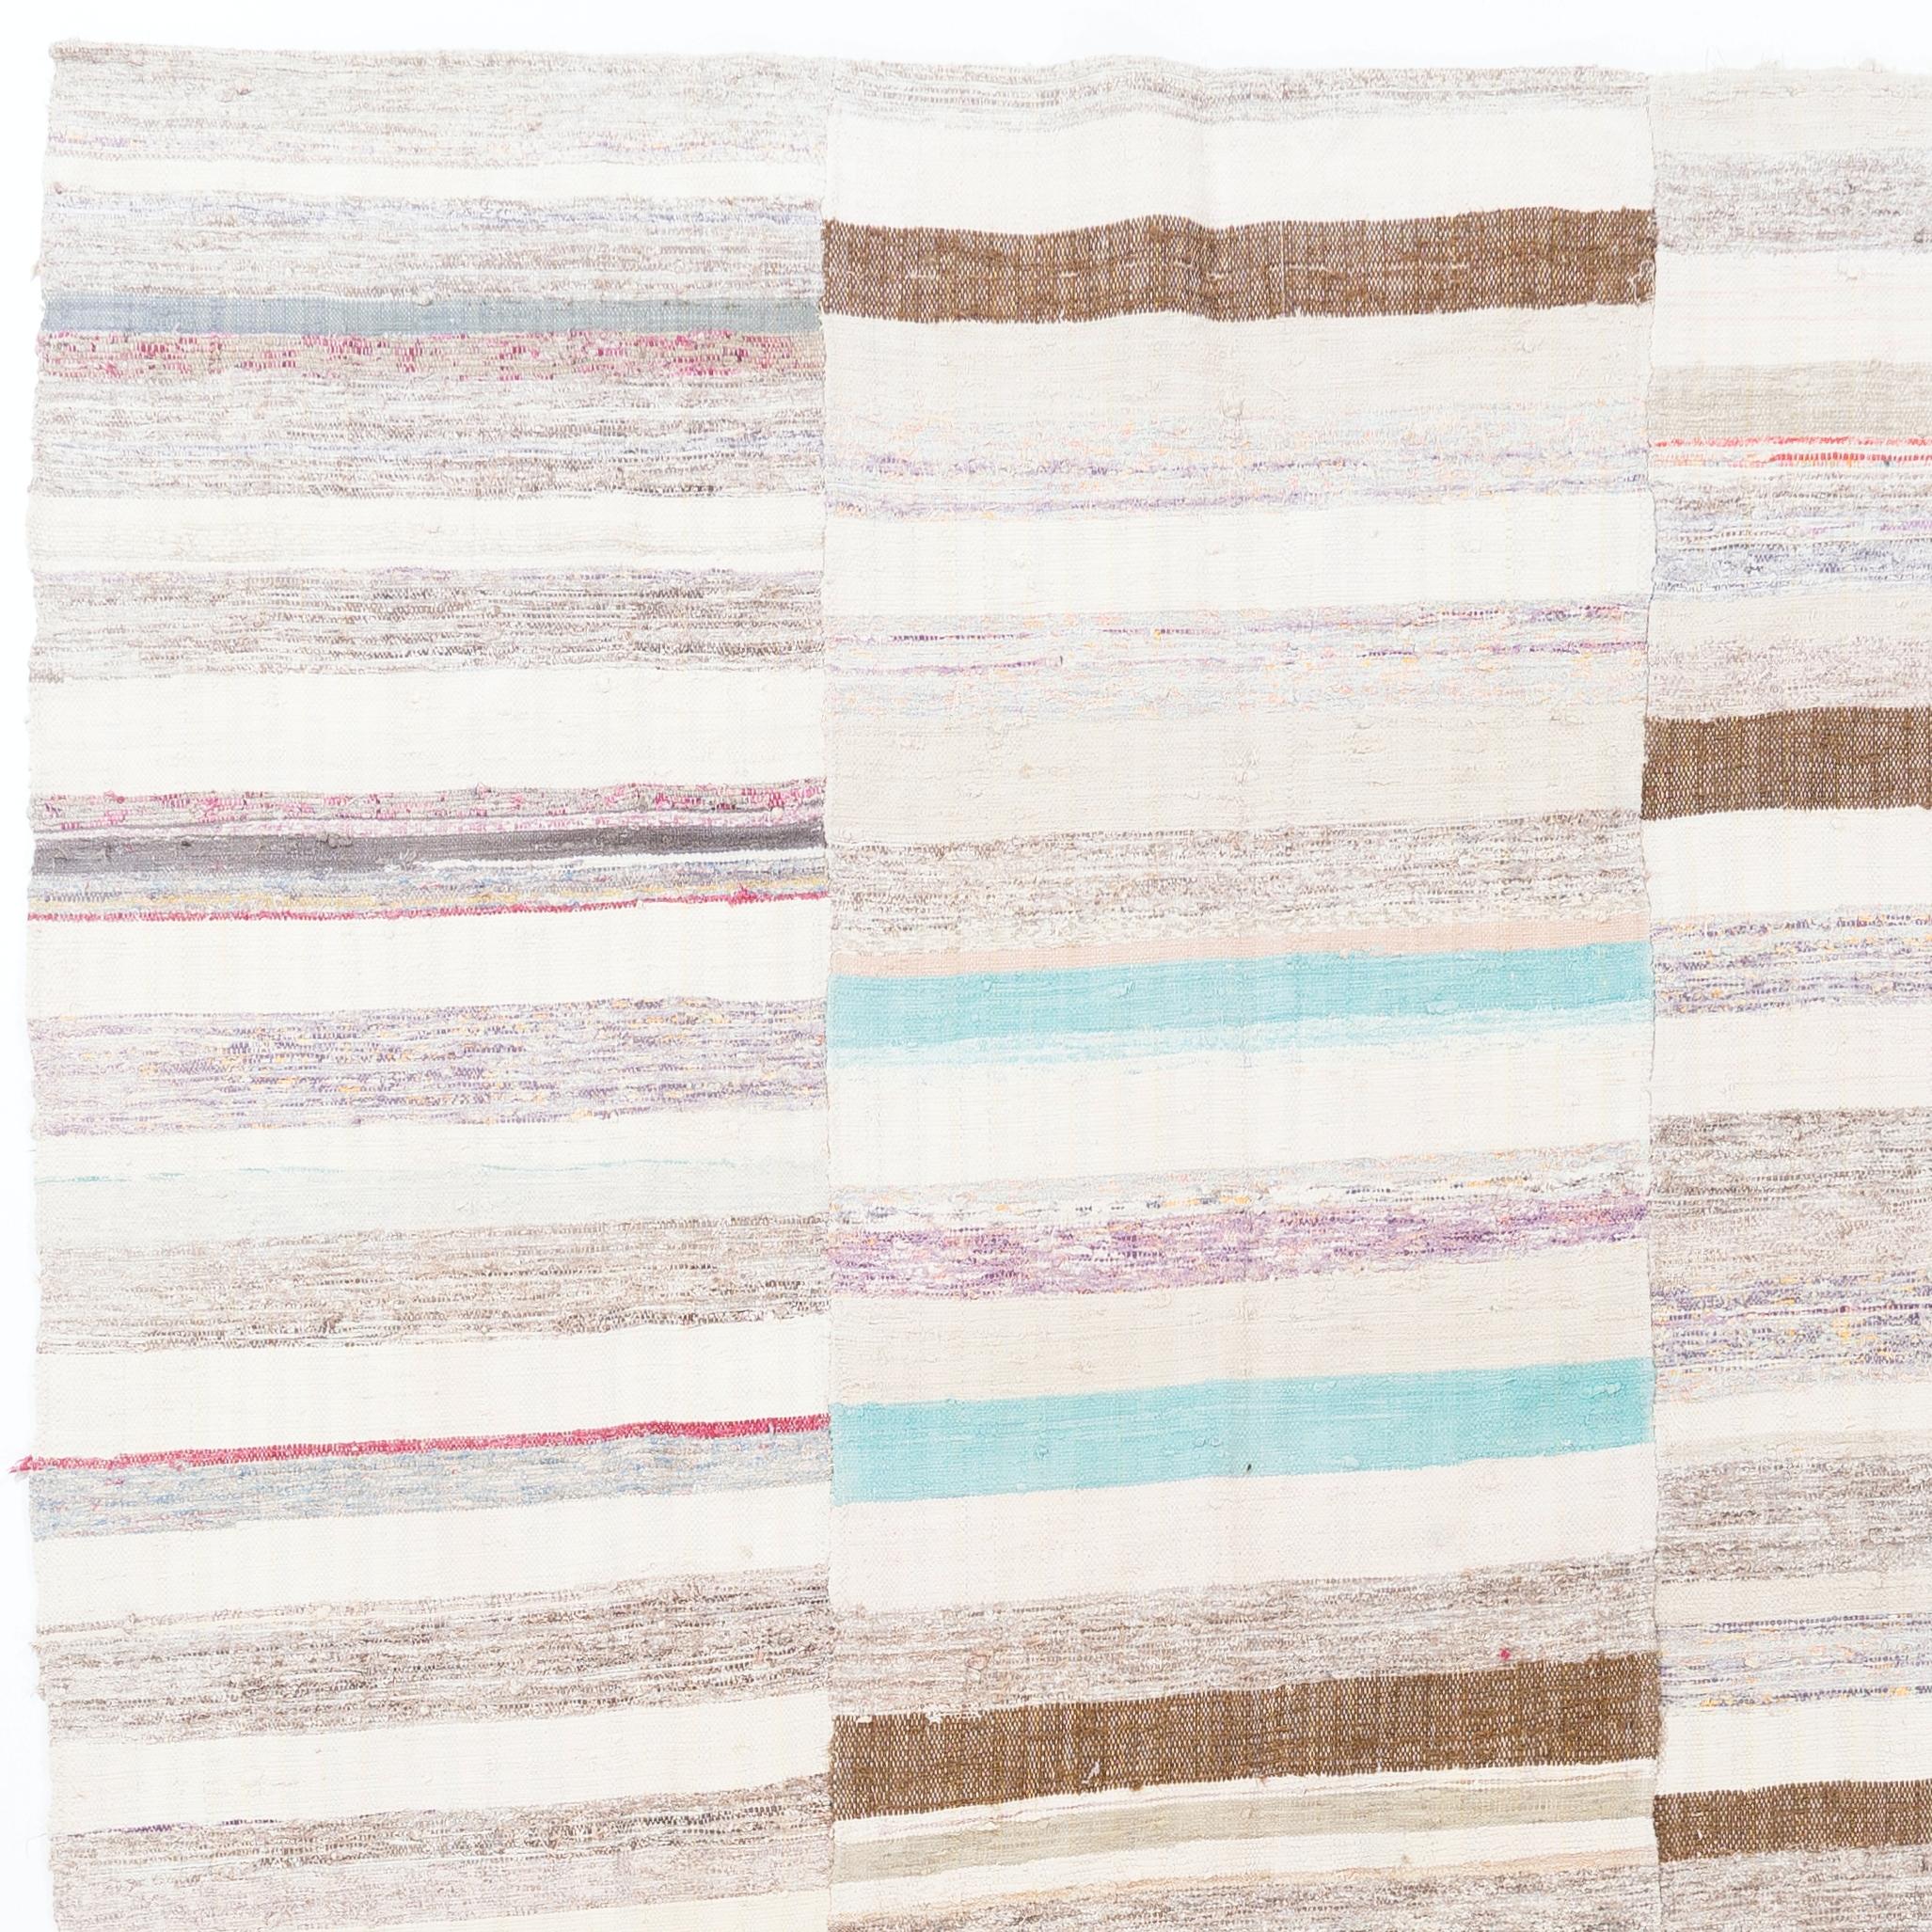 Ein handgewebter türkischer Bandkelim (Flachgewebe) mit einfachem Streifenmuster in sanften, verblassten Farben, aus Baumwolle. Stabil und leicht.  Maße: 6,4 x 11,4 ft.

Auf Wunsch können wir solche flachgewebten Kilim-Teppiche in unserer Werkstatt